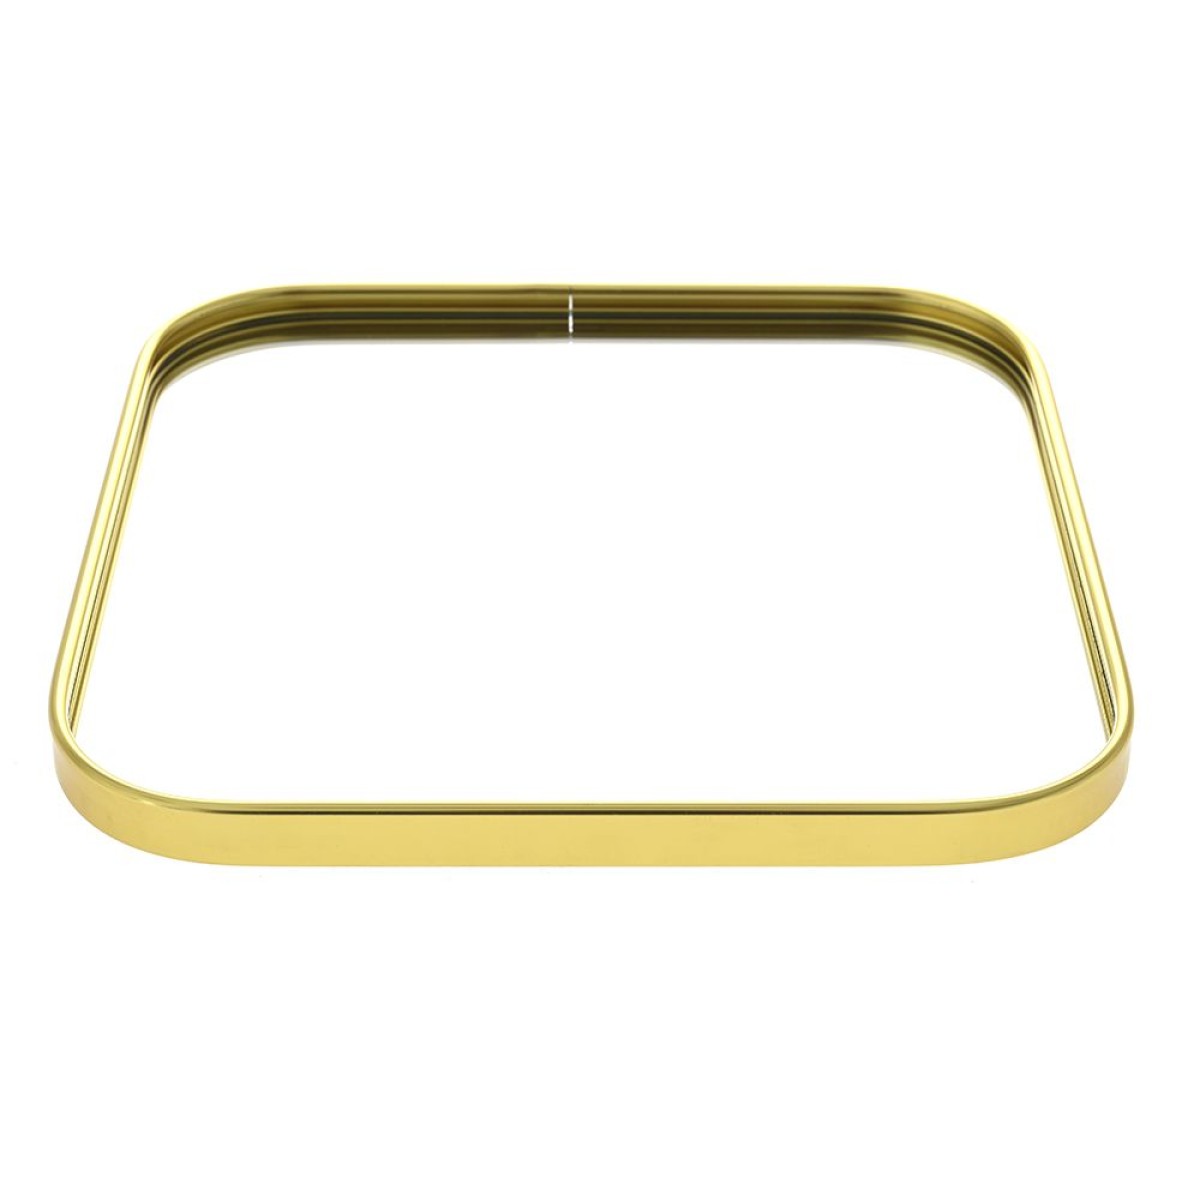 Δίσκος με Καθρέφτη 24x24cm Τετράγωνος & Μεταλλικός σε χρυσό χρώμα Iliadis 80972